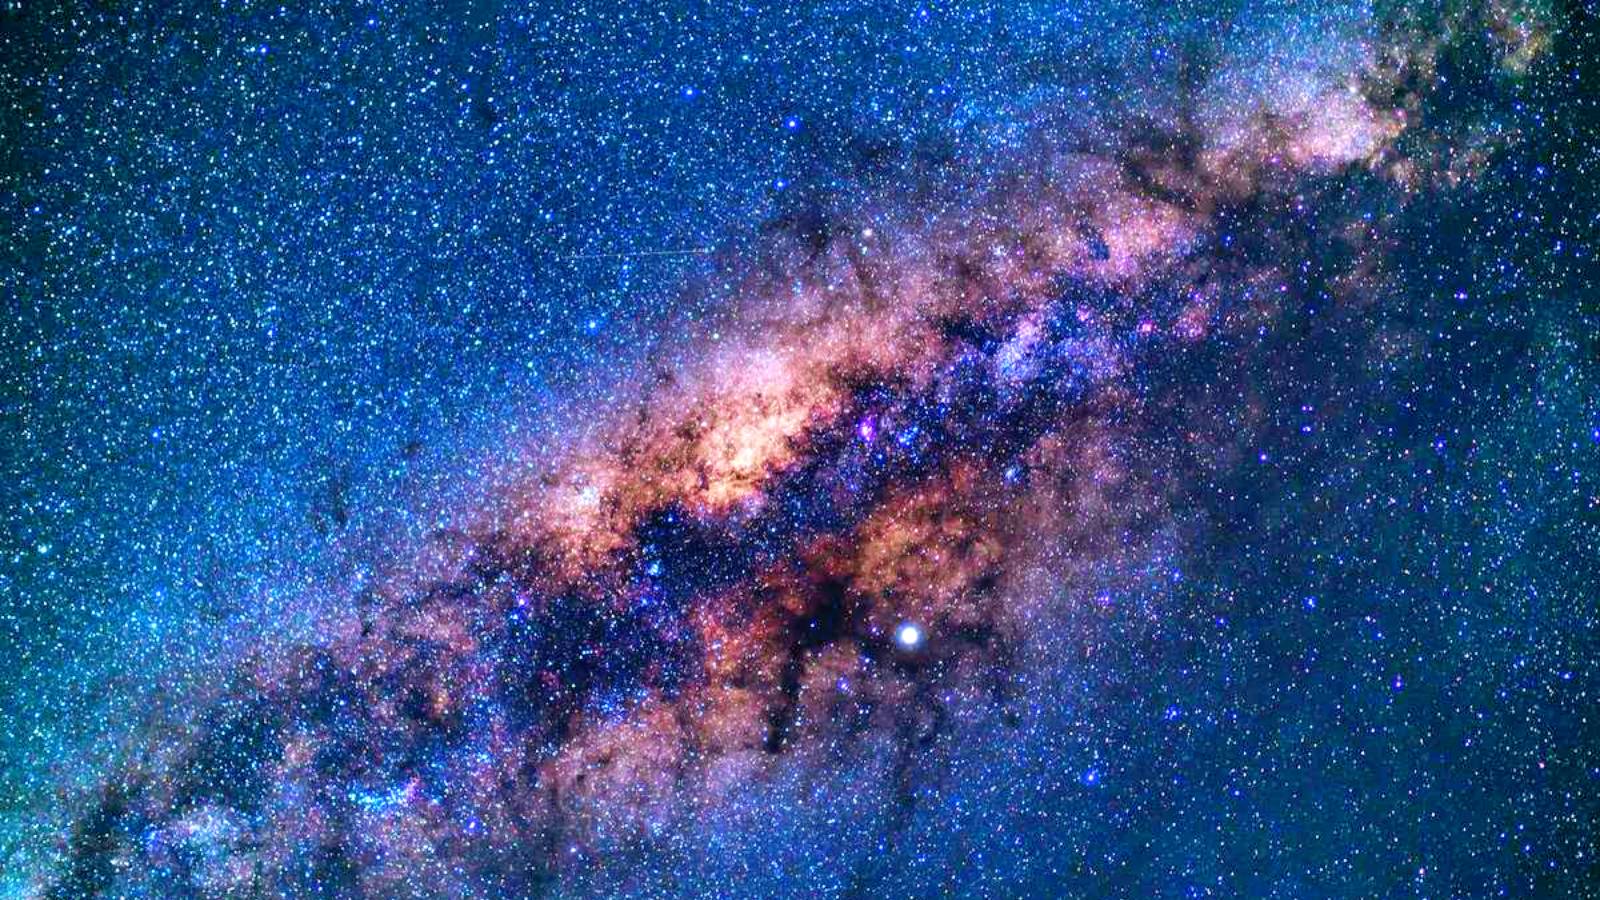 The Milky Way began